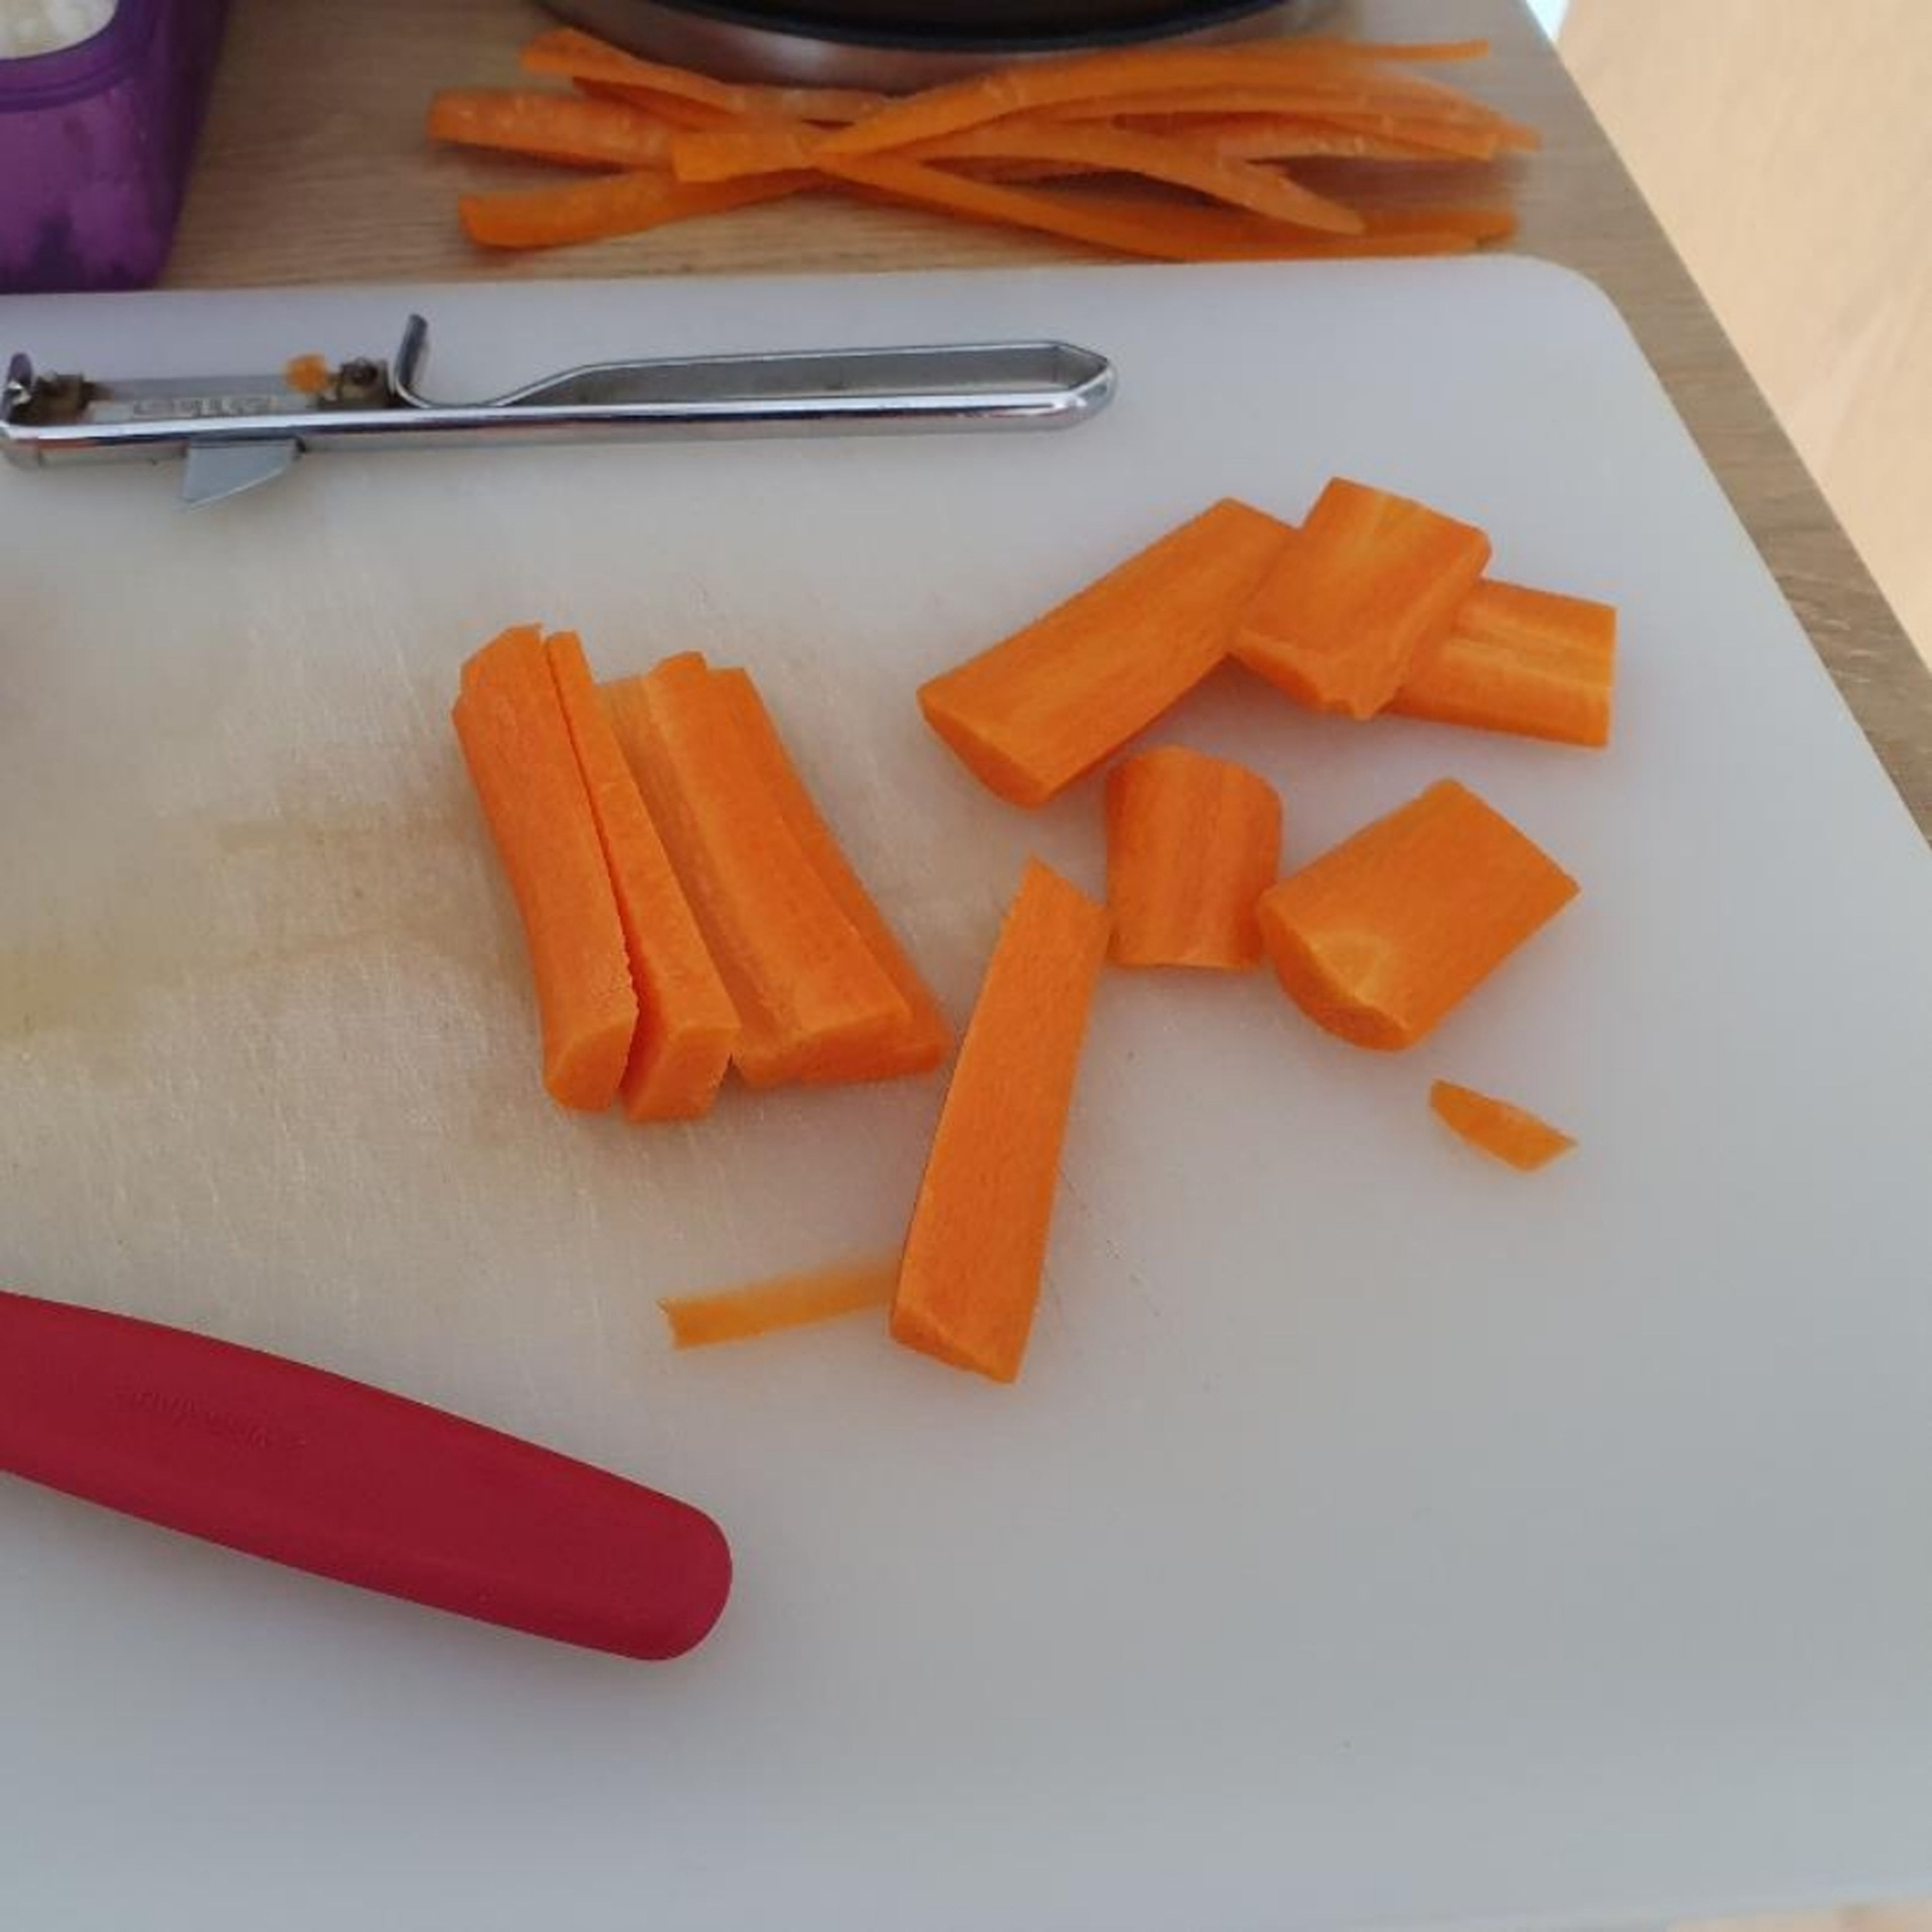 Karotte schälen, in etwa 5 cm lange Stücke schneiden. Diese in ca. 3 mm dicke Scheiben schneiden (Tipp: legt man die Karotte auf die geschnittene Seite, rutscht sie nicht so leicht weg :)).